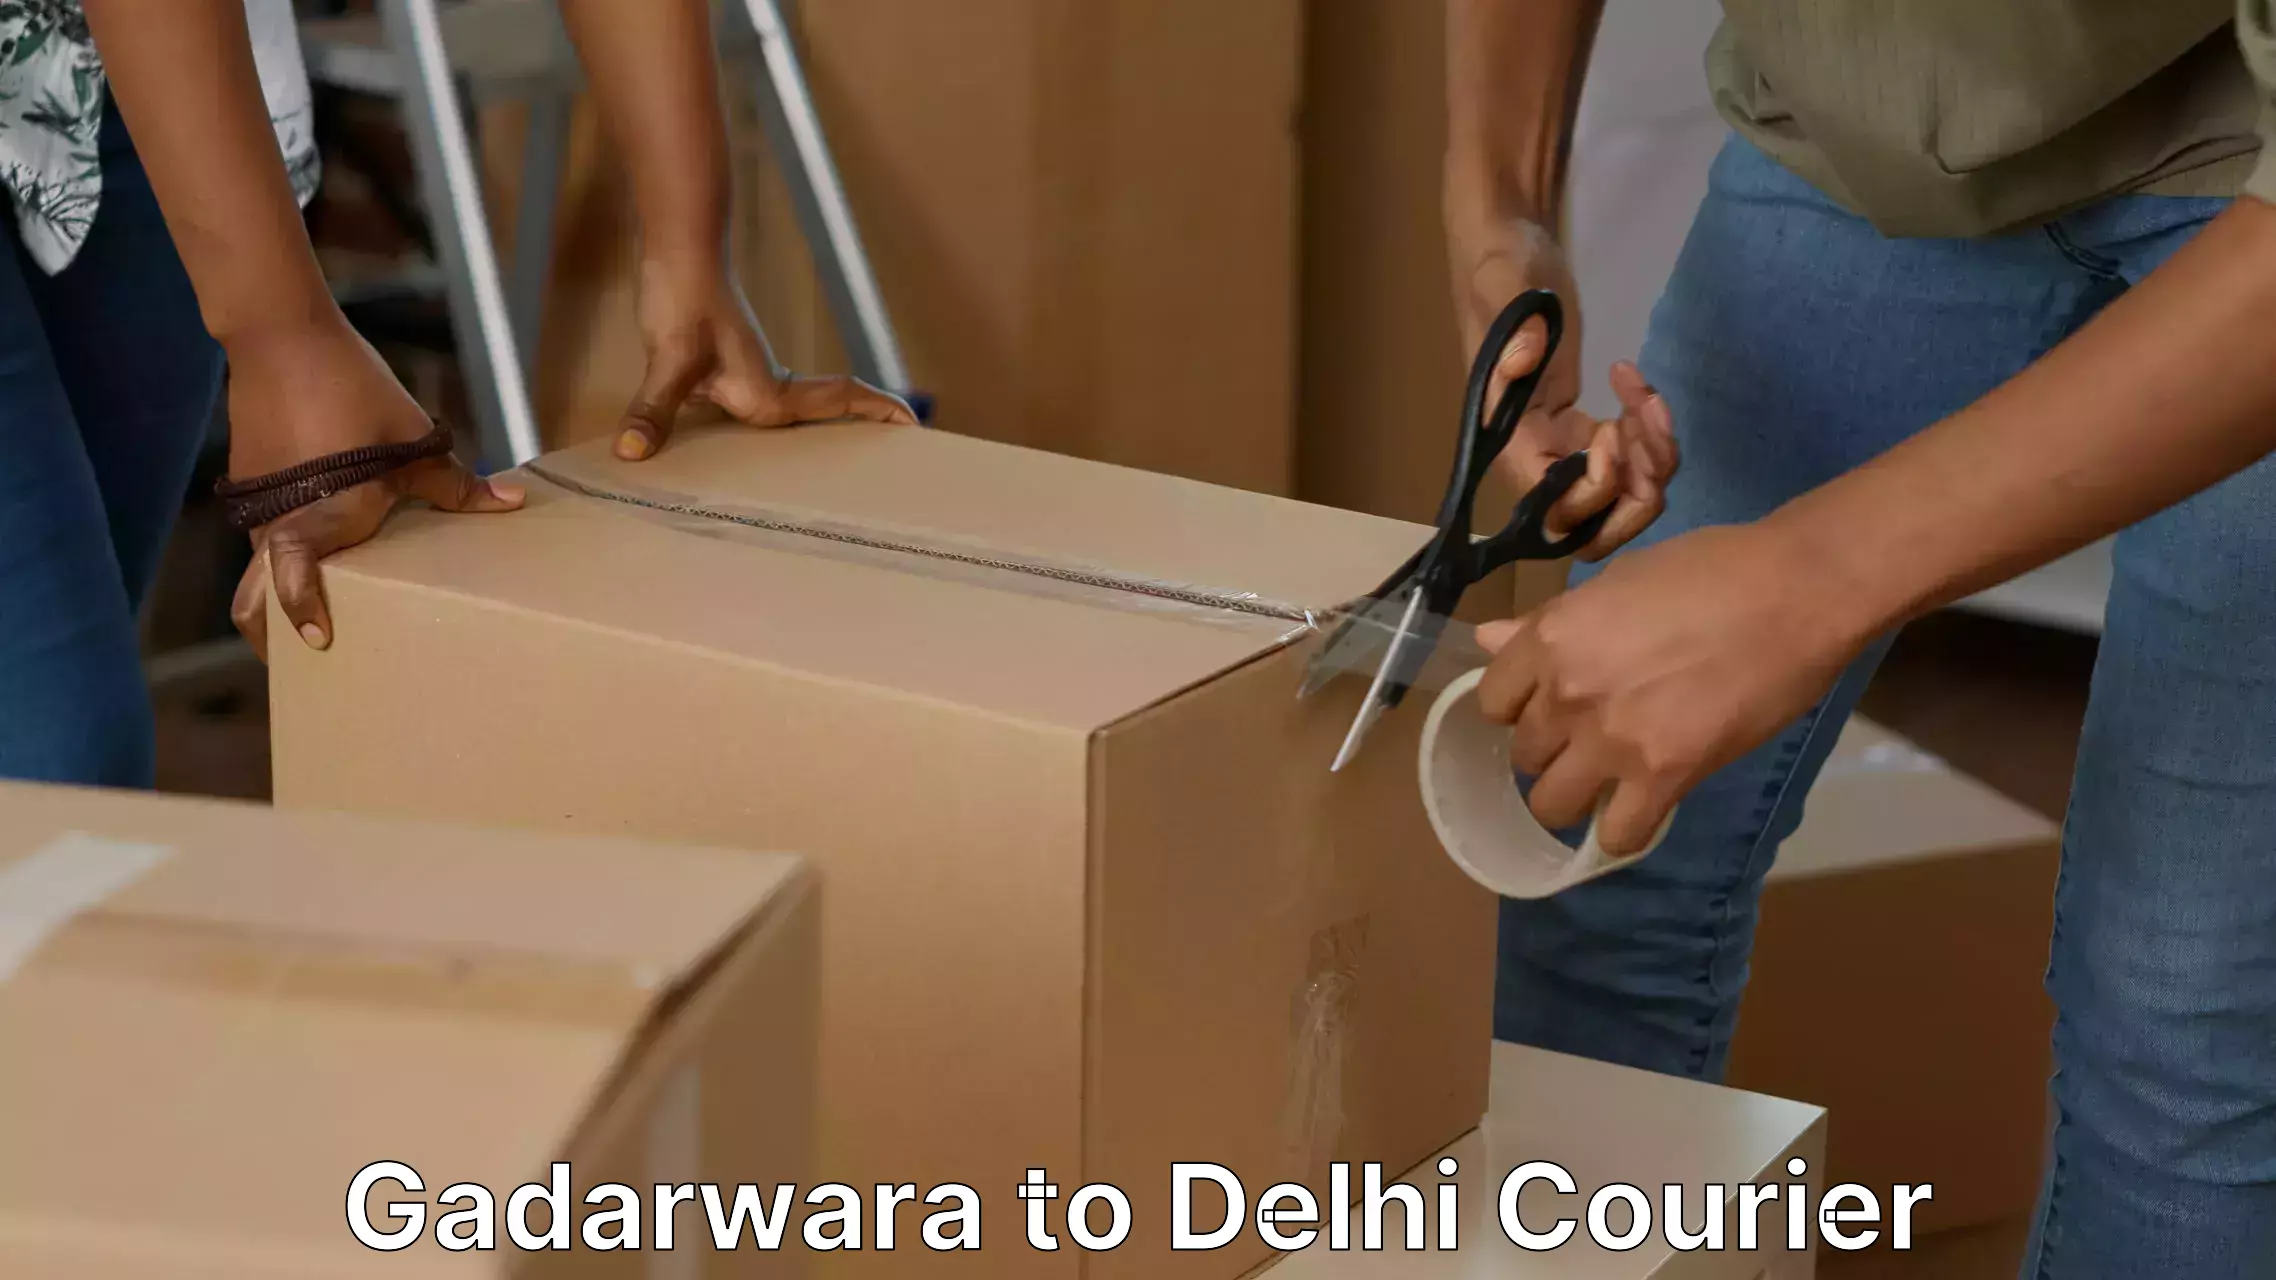 Furniture moving experts Gadarwara to University of Delhi